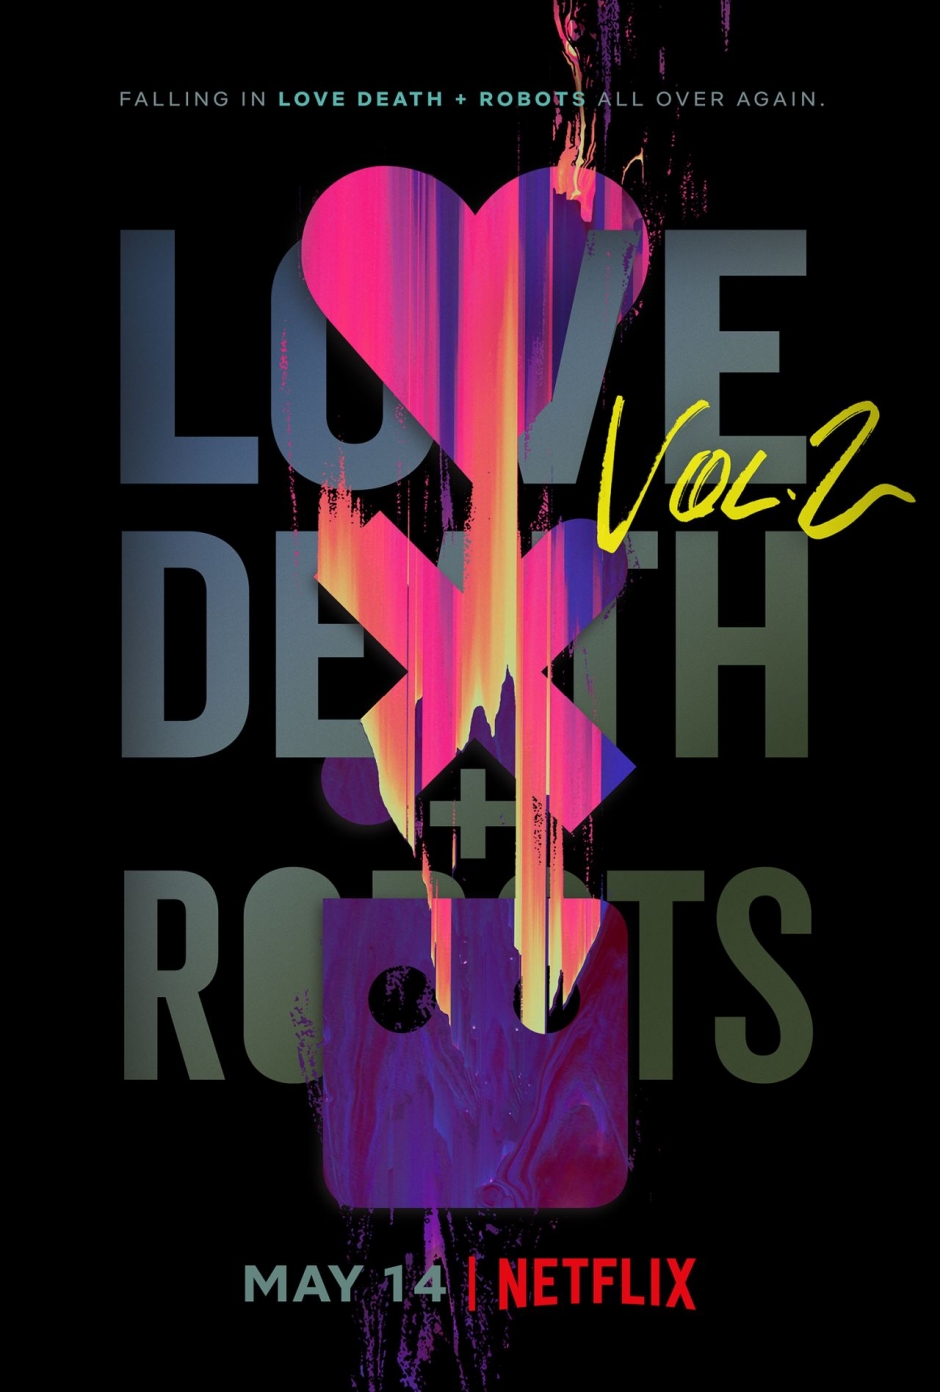 love death + robots: sezonul 2 #netflix Love Death + Robots: Sezonul 2 #Netflix lovedeathrobots2 poster